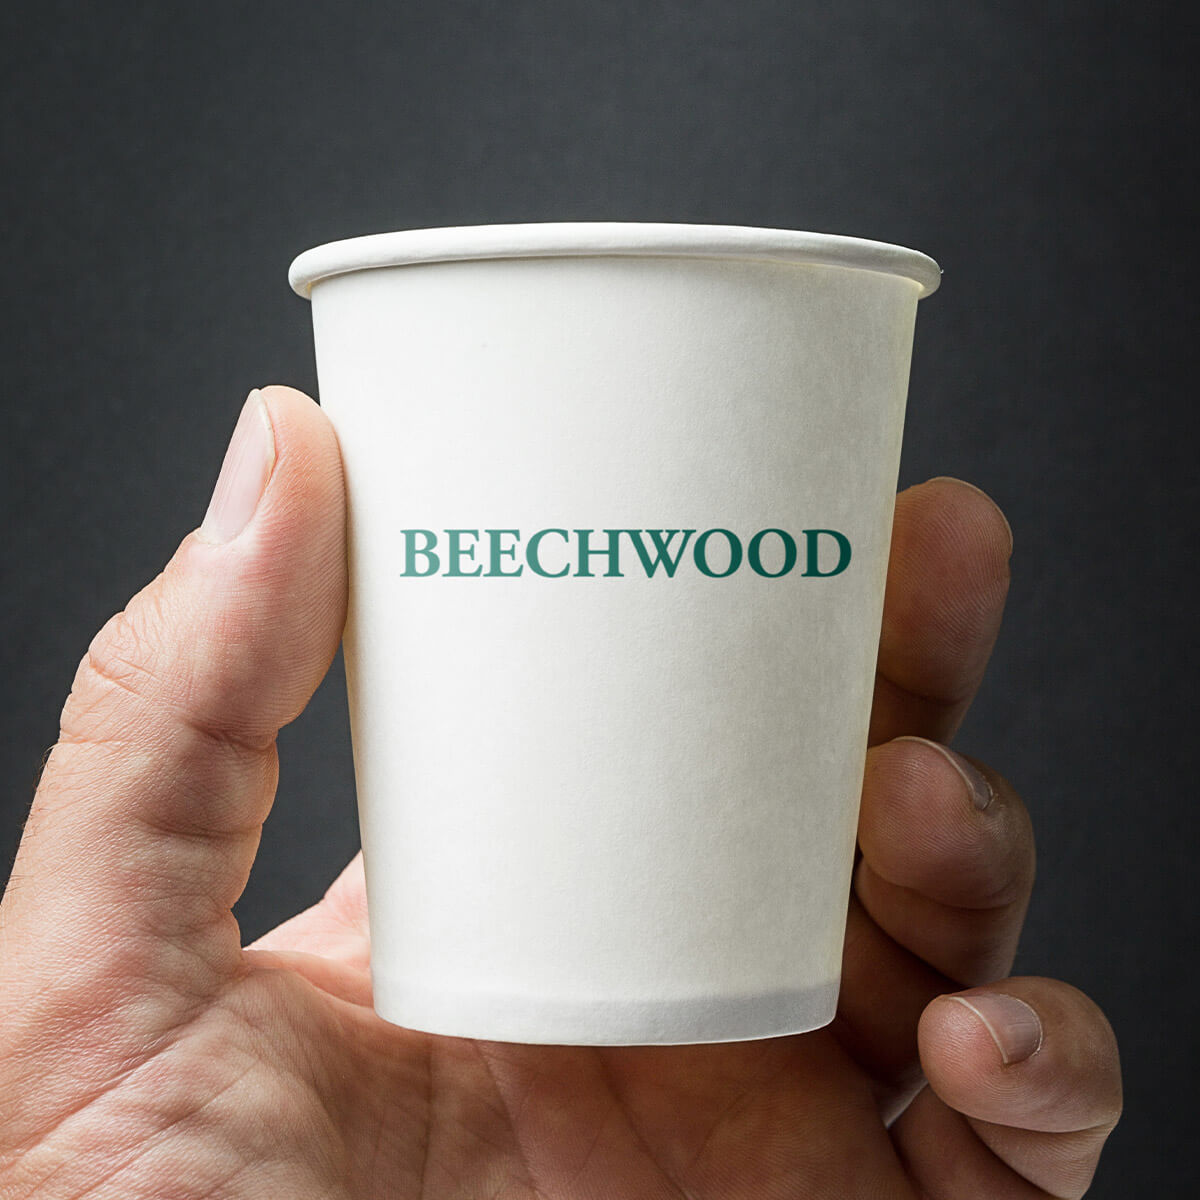 Beechwood cup